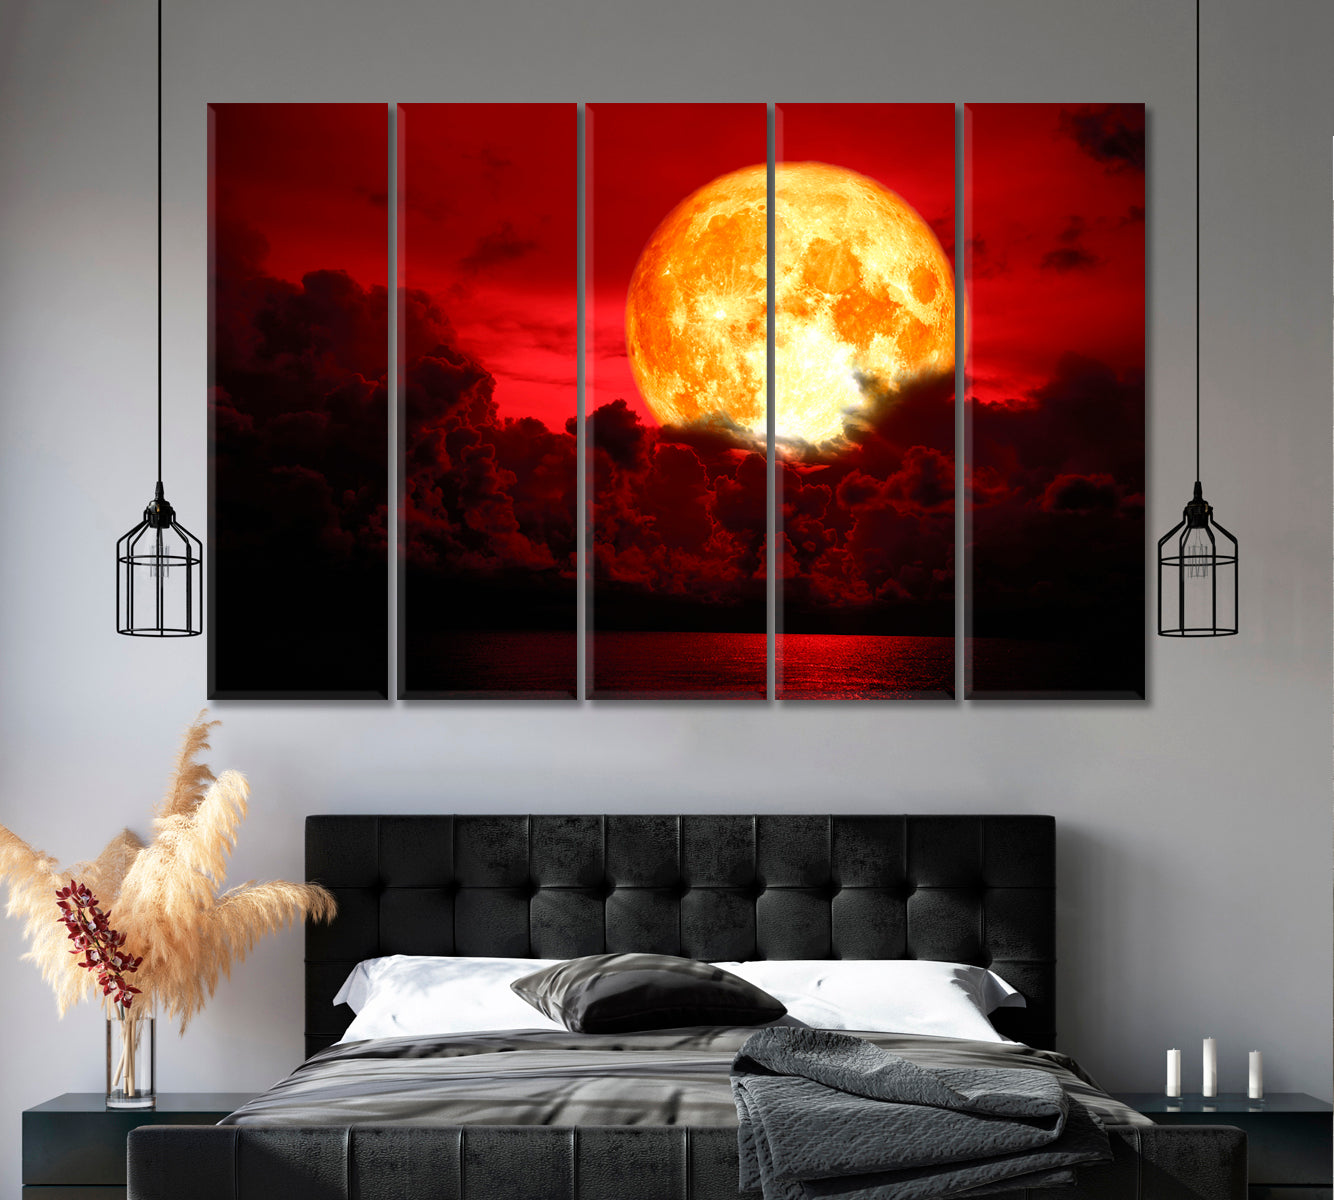 Eclipse Full Blood Moon Fabulous Landscape Scenery Landscape Fine Art Print Artesty 5 panels 36" x 24" 